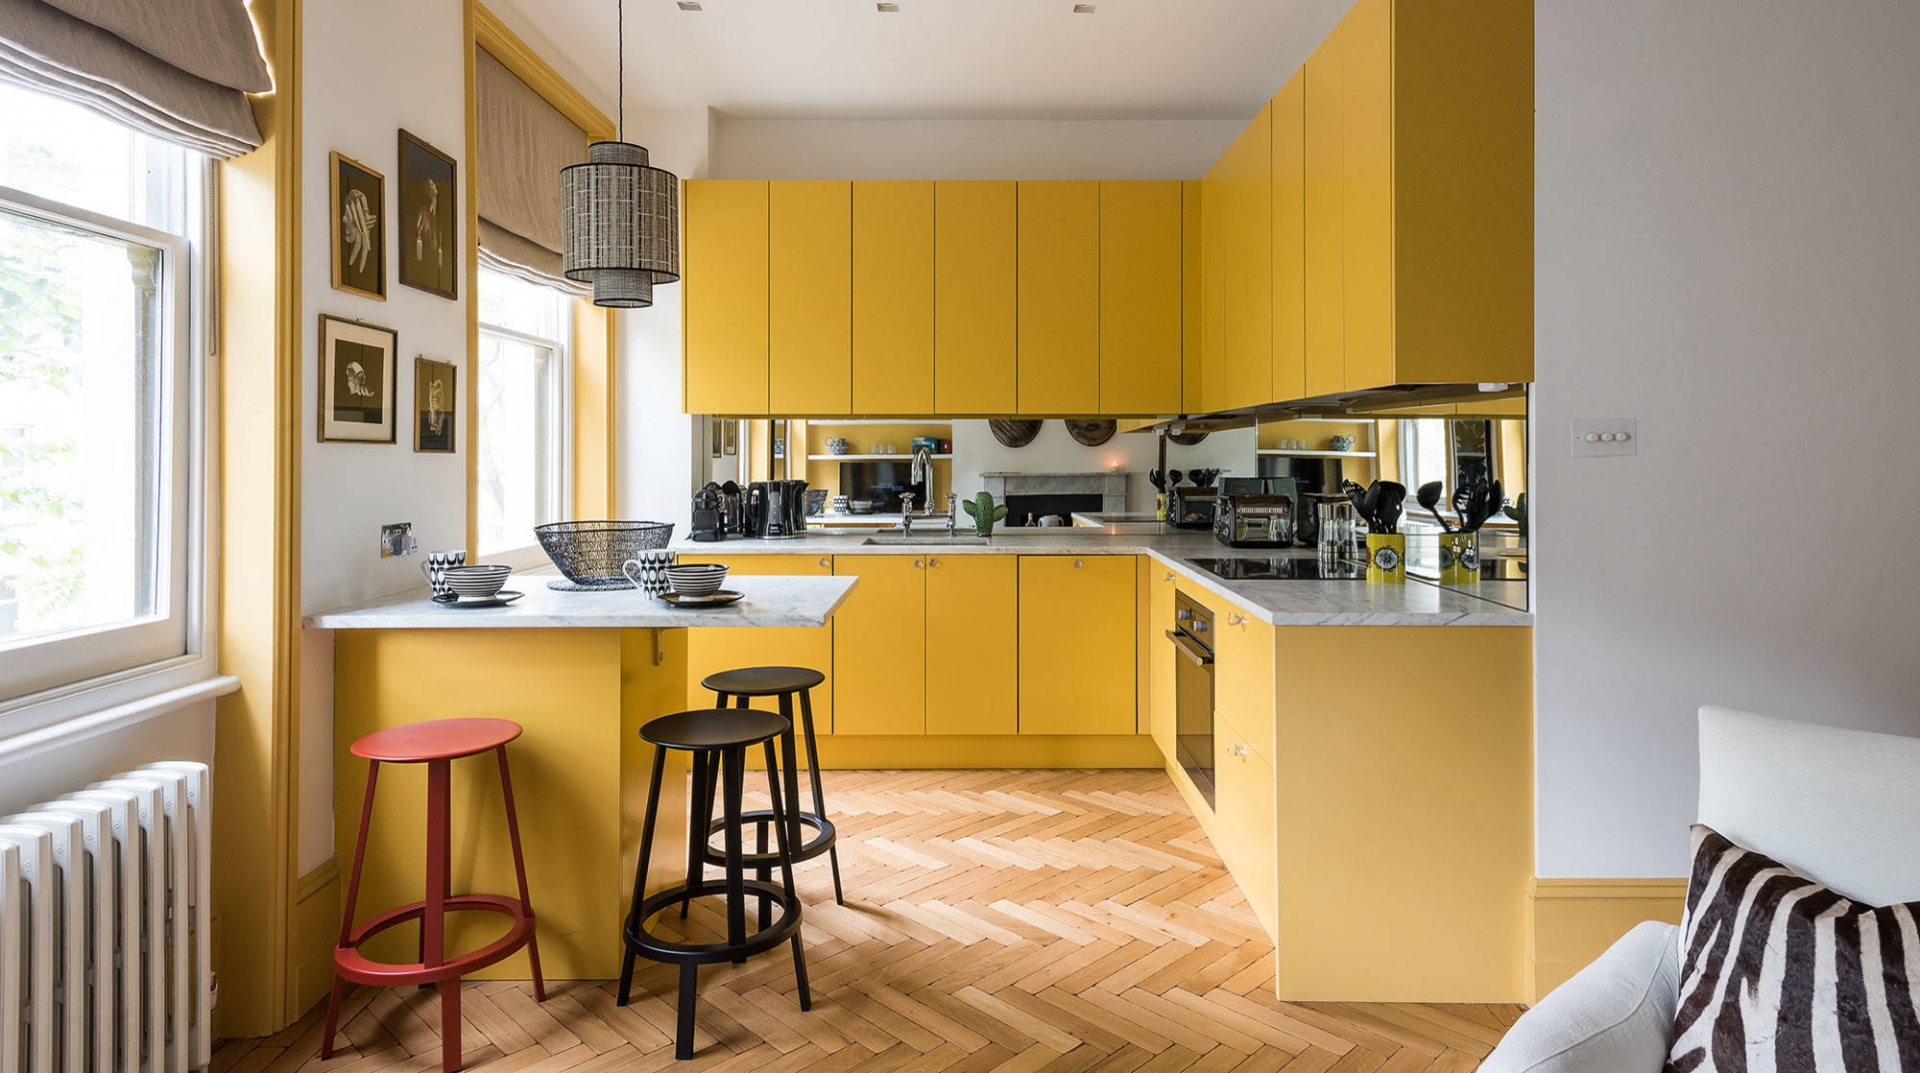 Phòng bếp có thiết kế kiểu chữ L sử dụng gam màu vàng cho cả hệ thống tủ bếp dưới và tủ bếp trên kịch trần cho không gian cao thoáng. Chiếc bàn ăn bố trí ở góc tường phối hợp ghế đẩu màu đỏ và đen tạo nên điểm nhấn đẹp mắt.